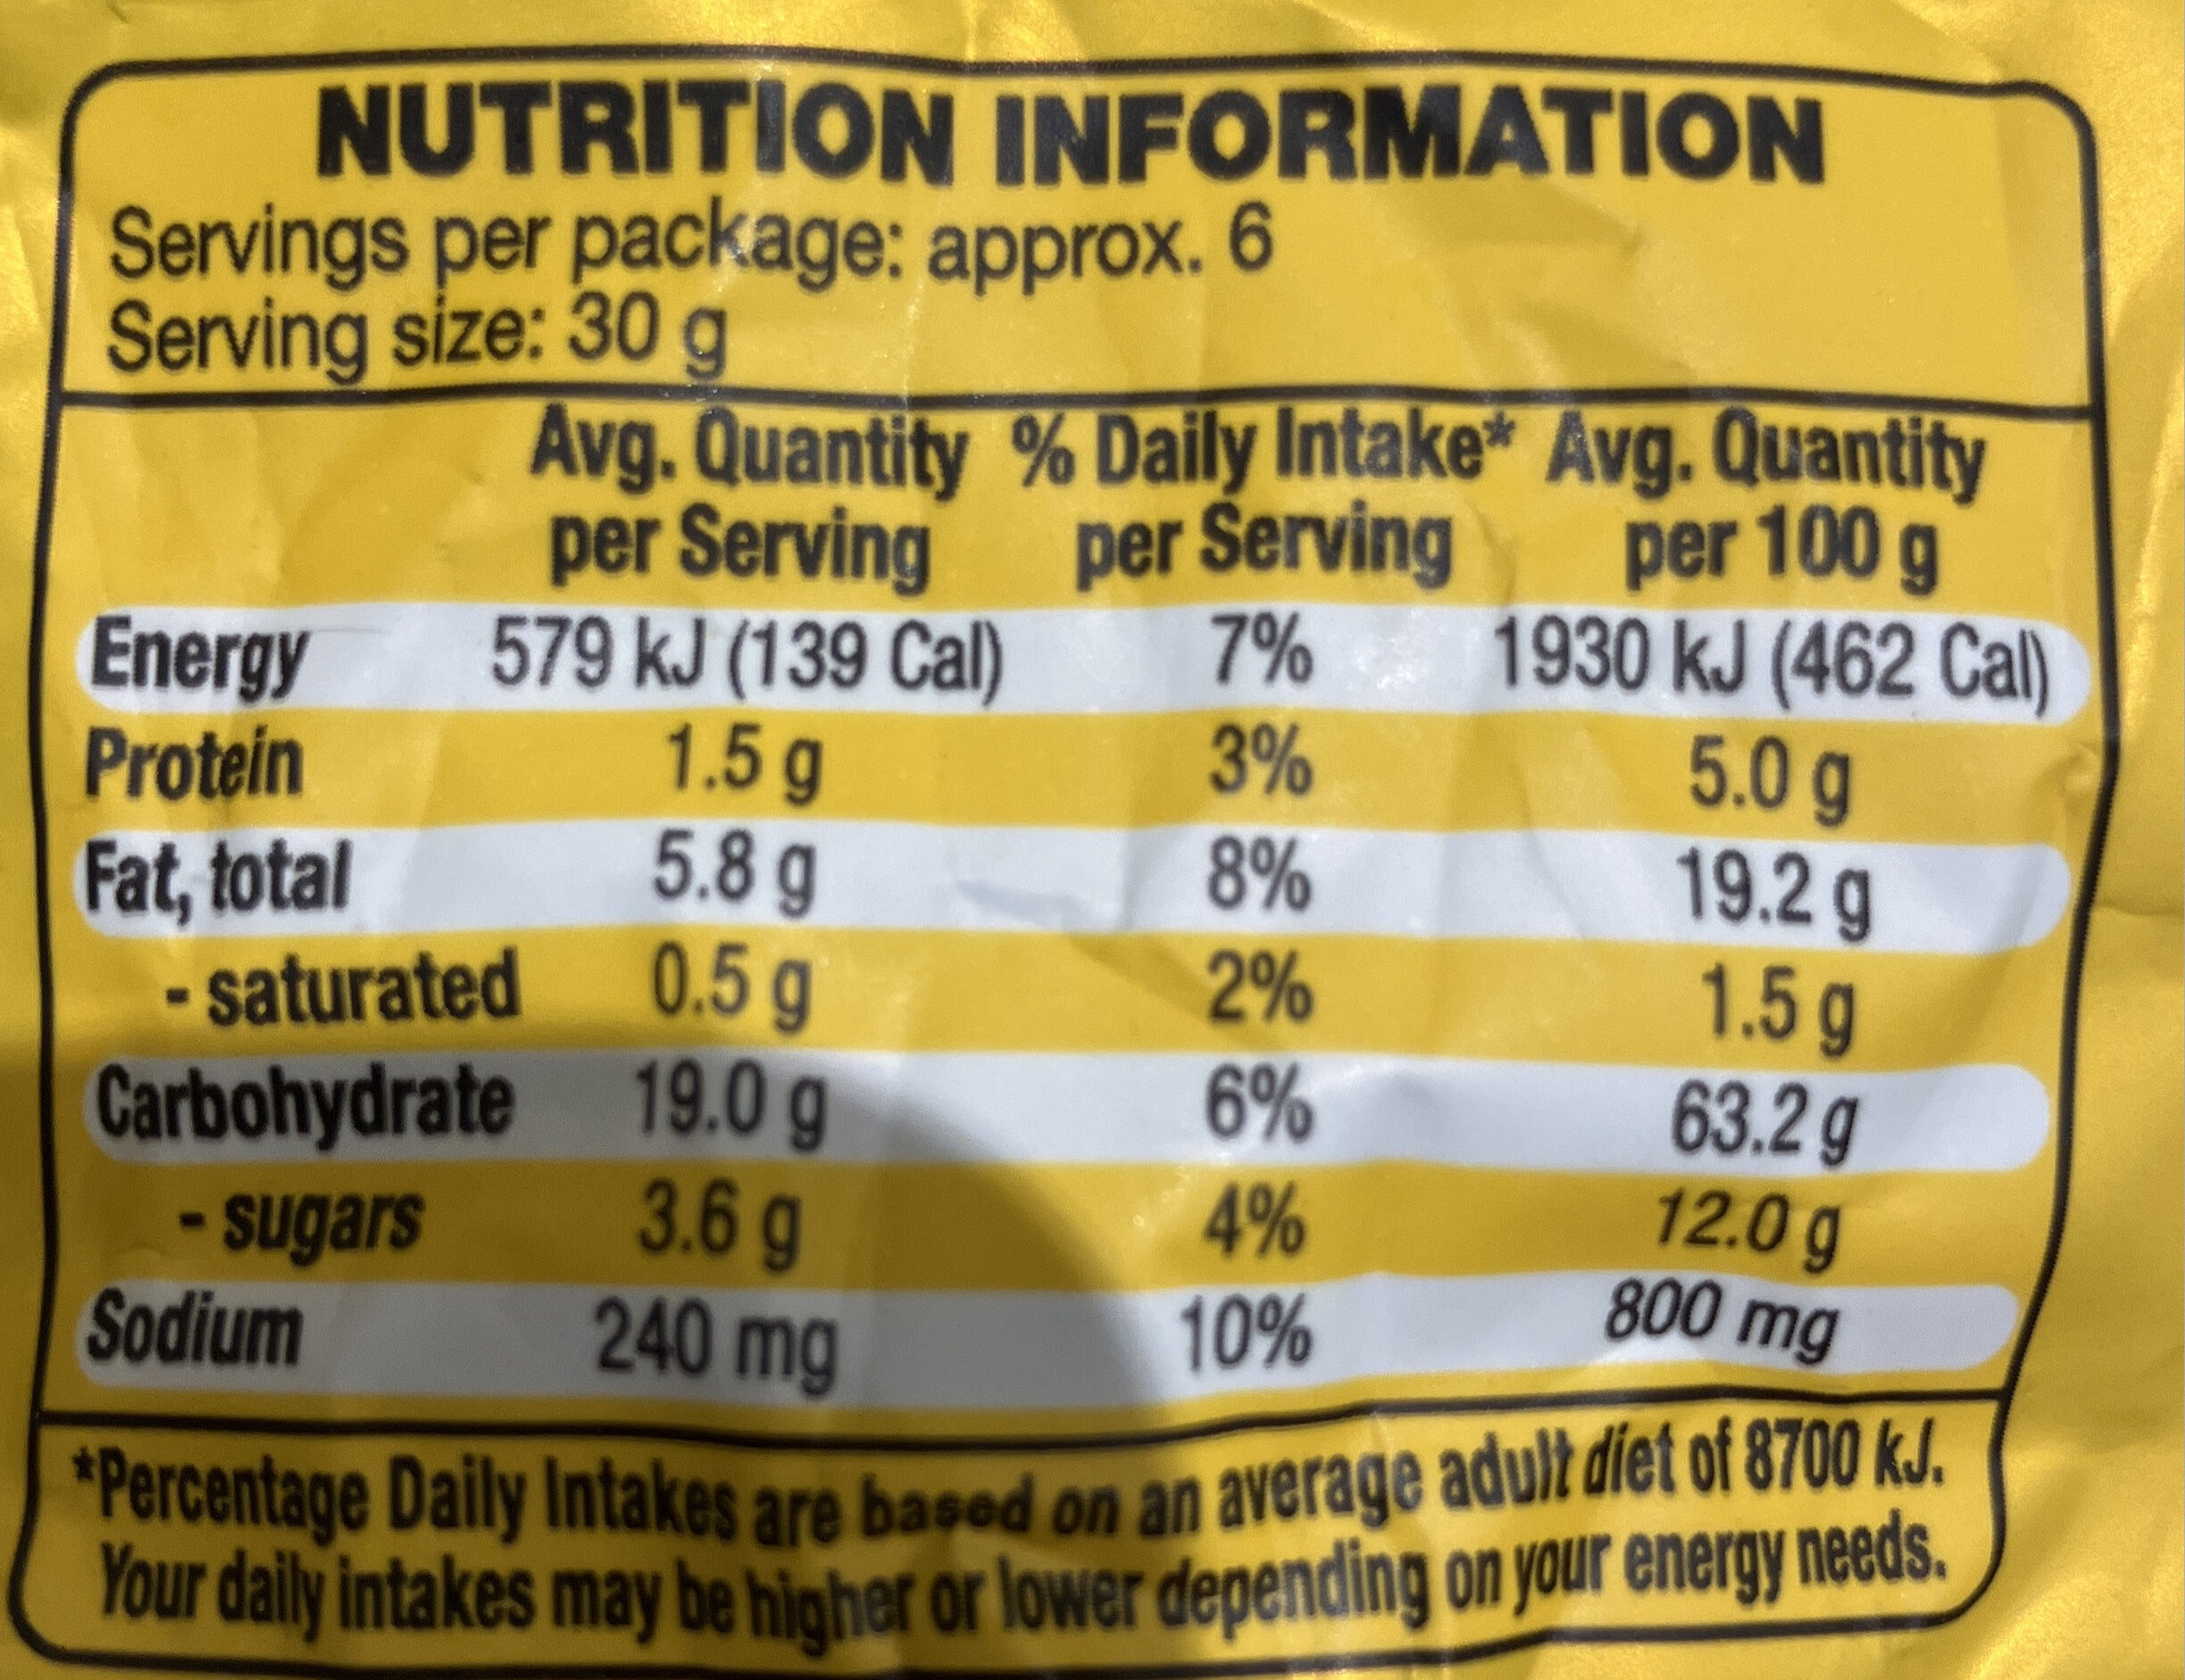 soy crisps honey mustard - Nutrition facts